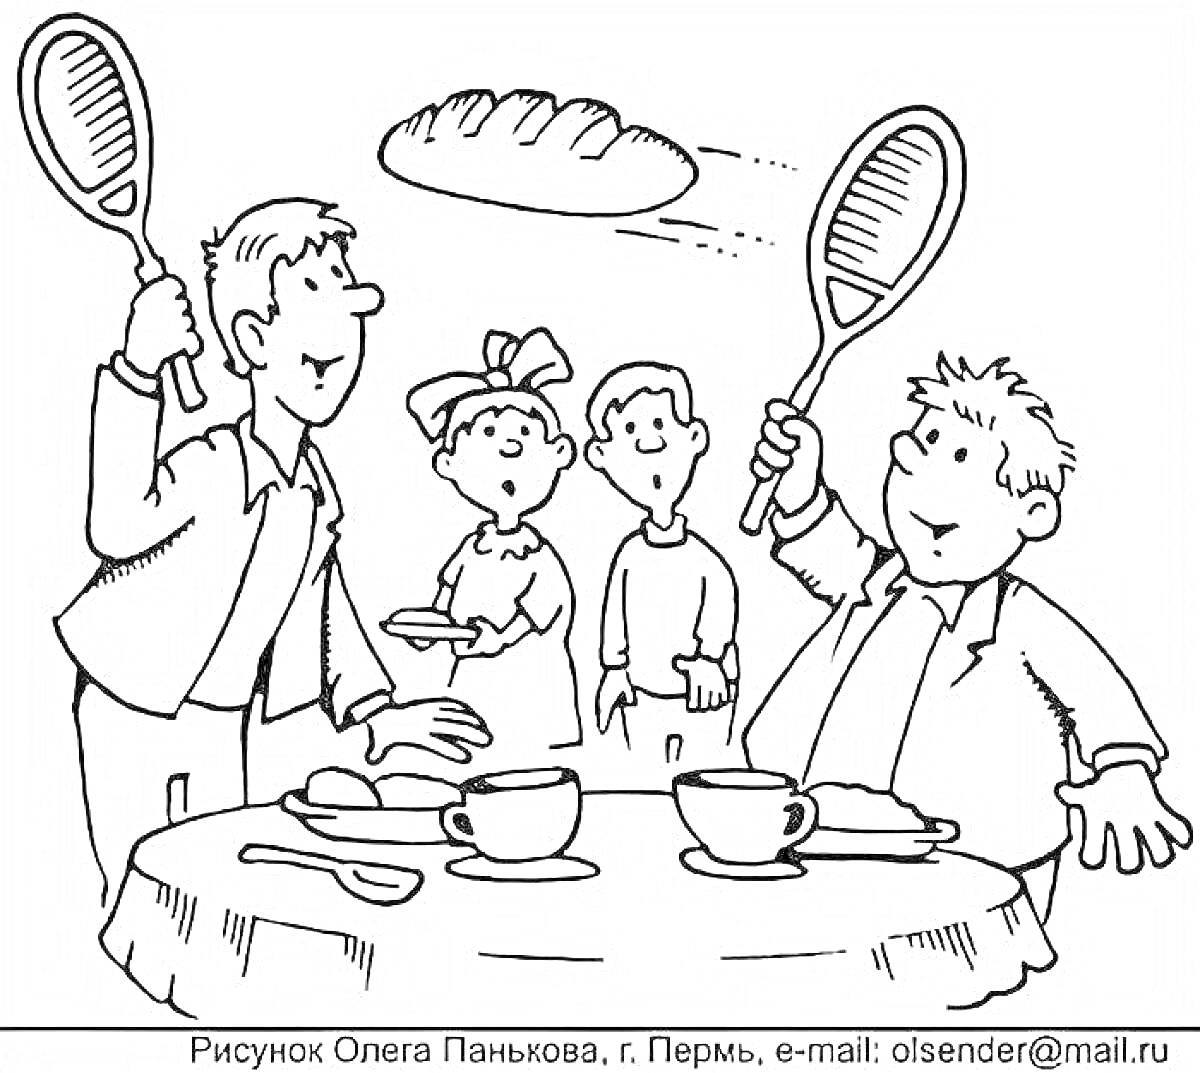 Раскраска Двое мужчин за обеденным столом кидаются хлебом, используя теннисные ракетки, двое детей смотрят с удивлением